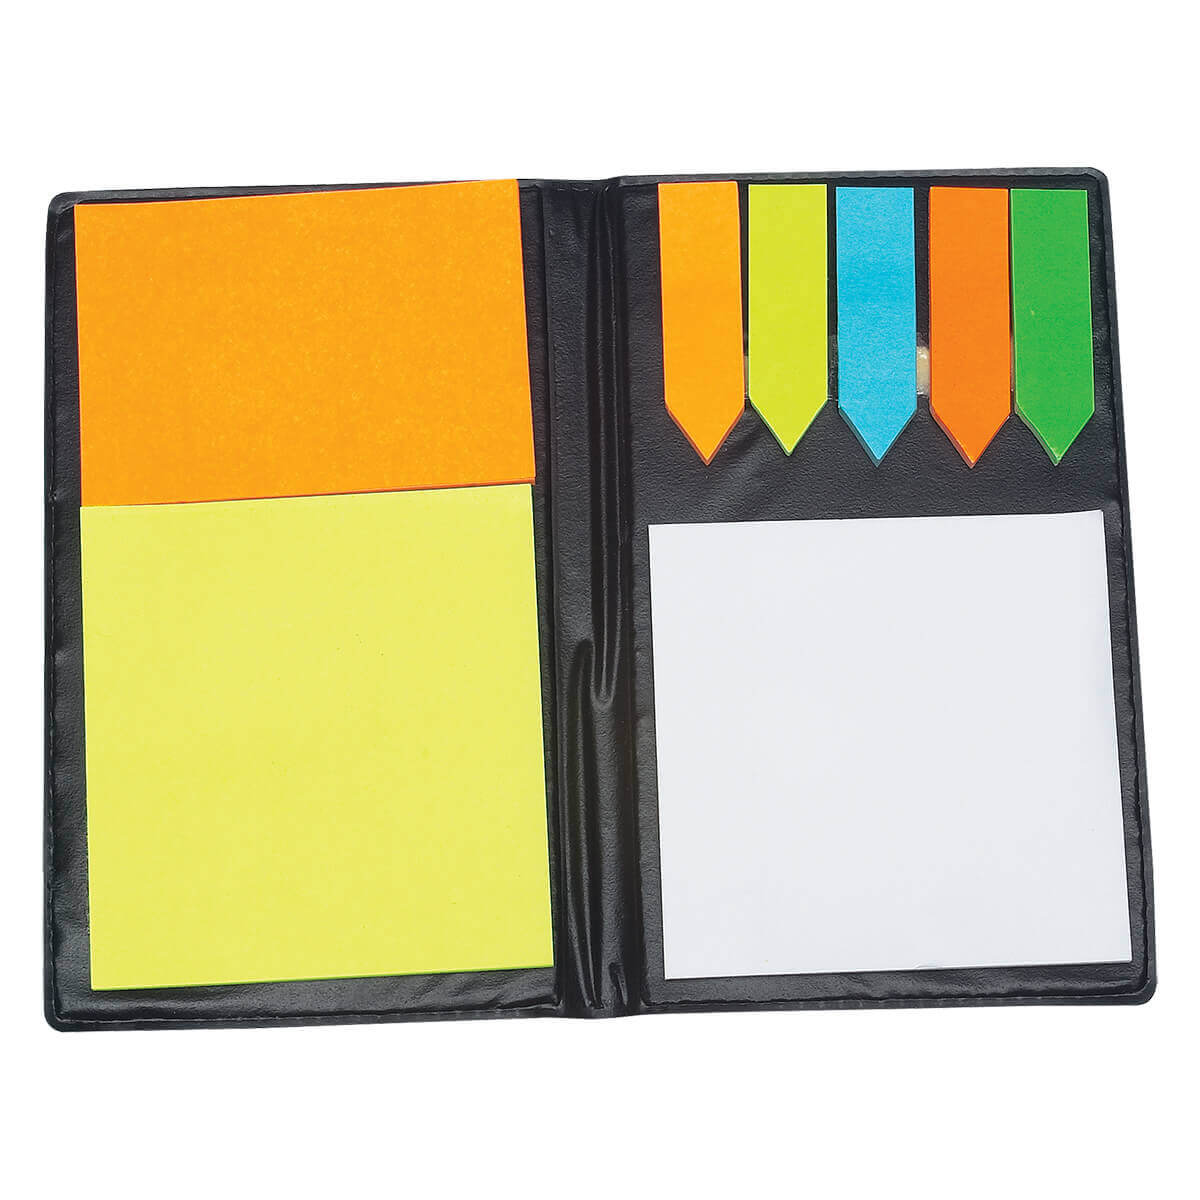 Pocket Size Sticky Pad Organizer 1